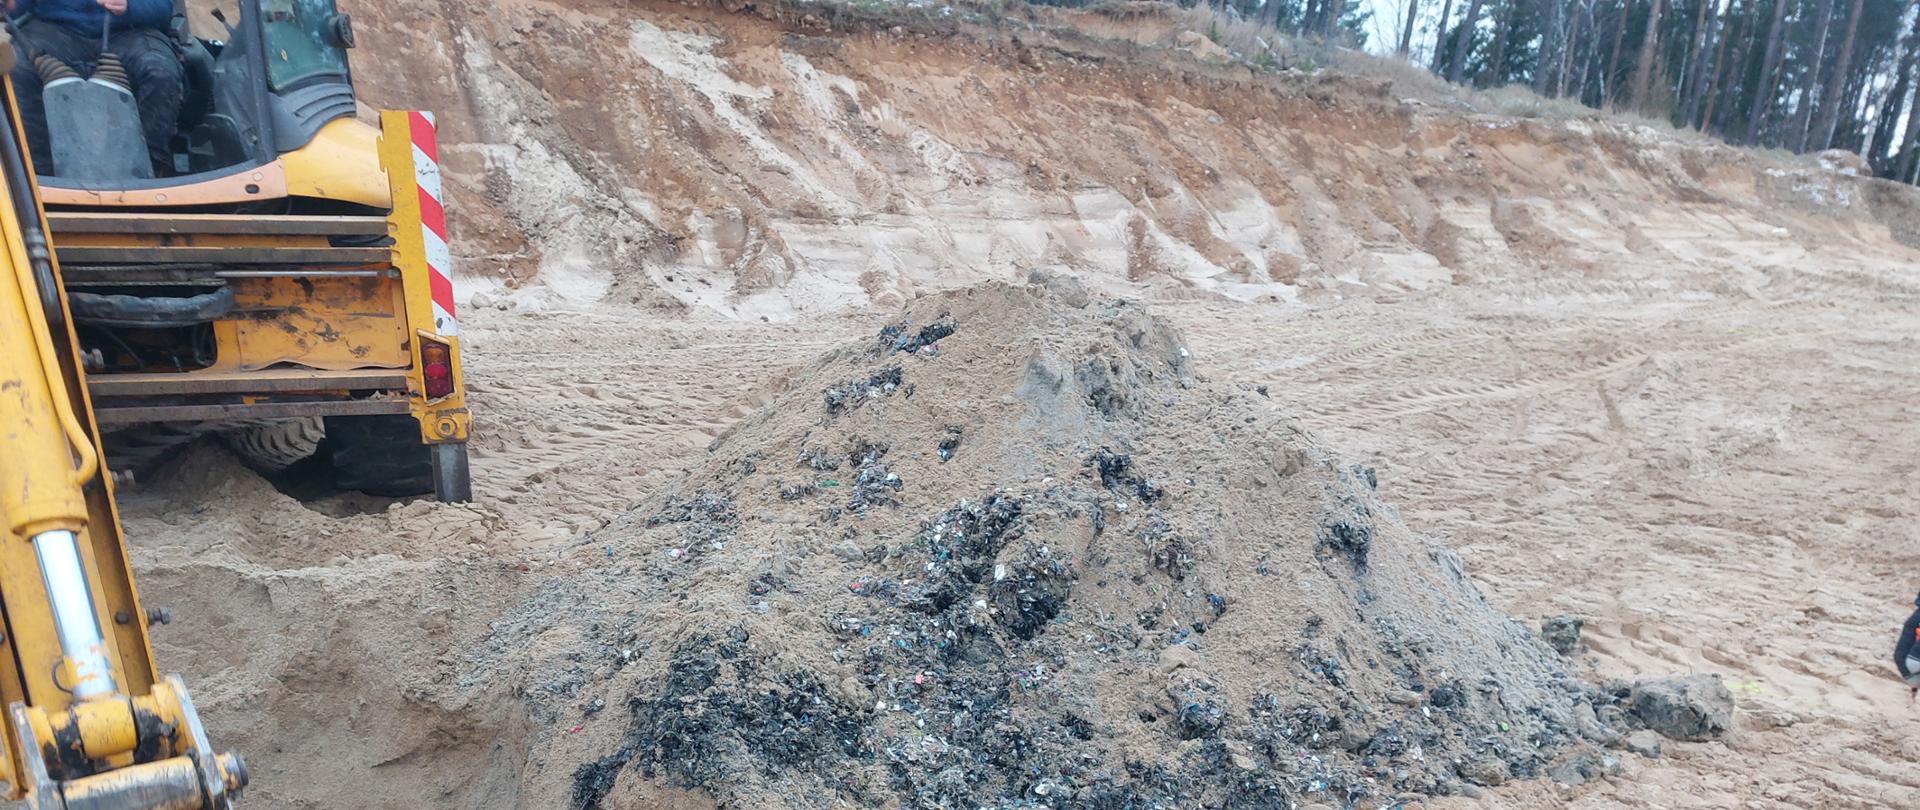 Odkopane odpady lezą na piasku, obok koparka